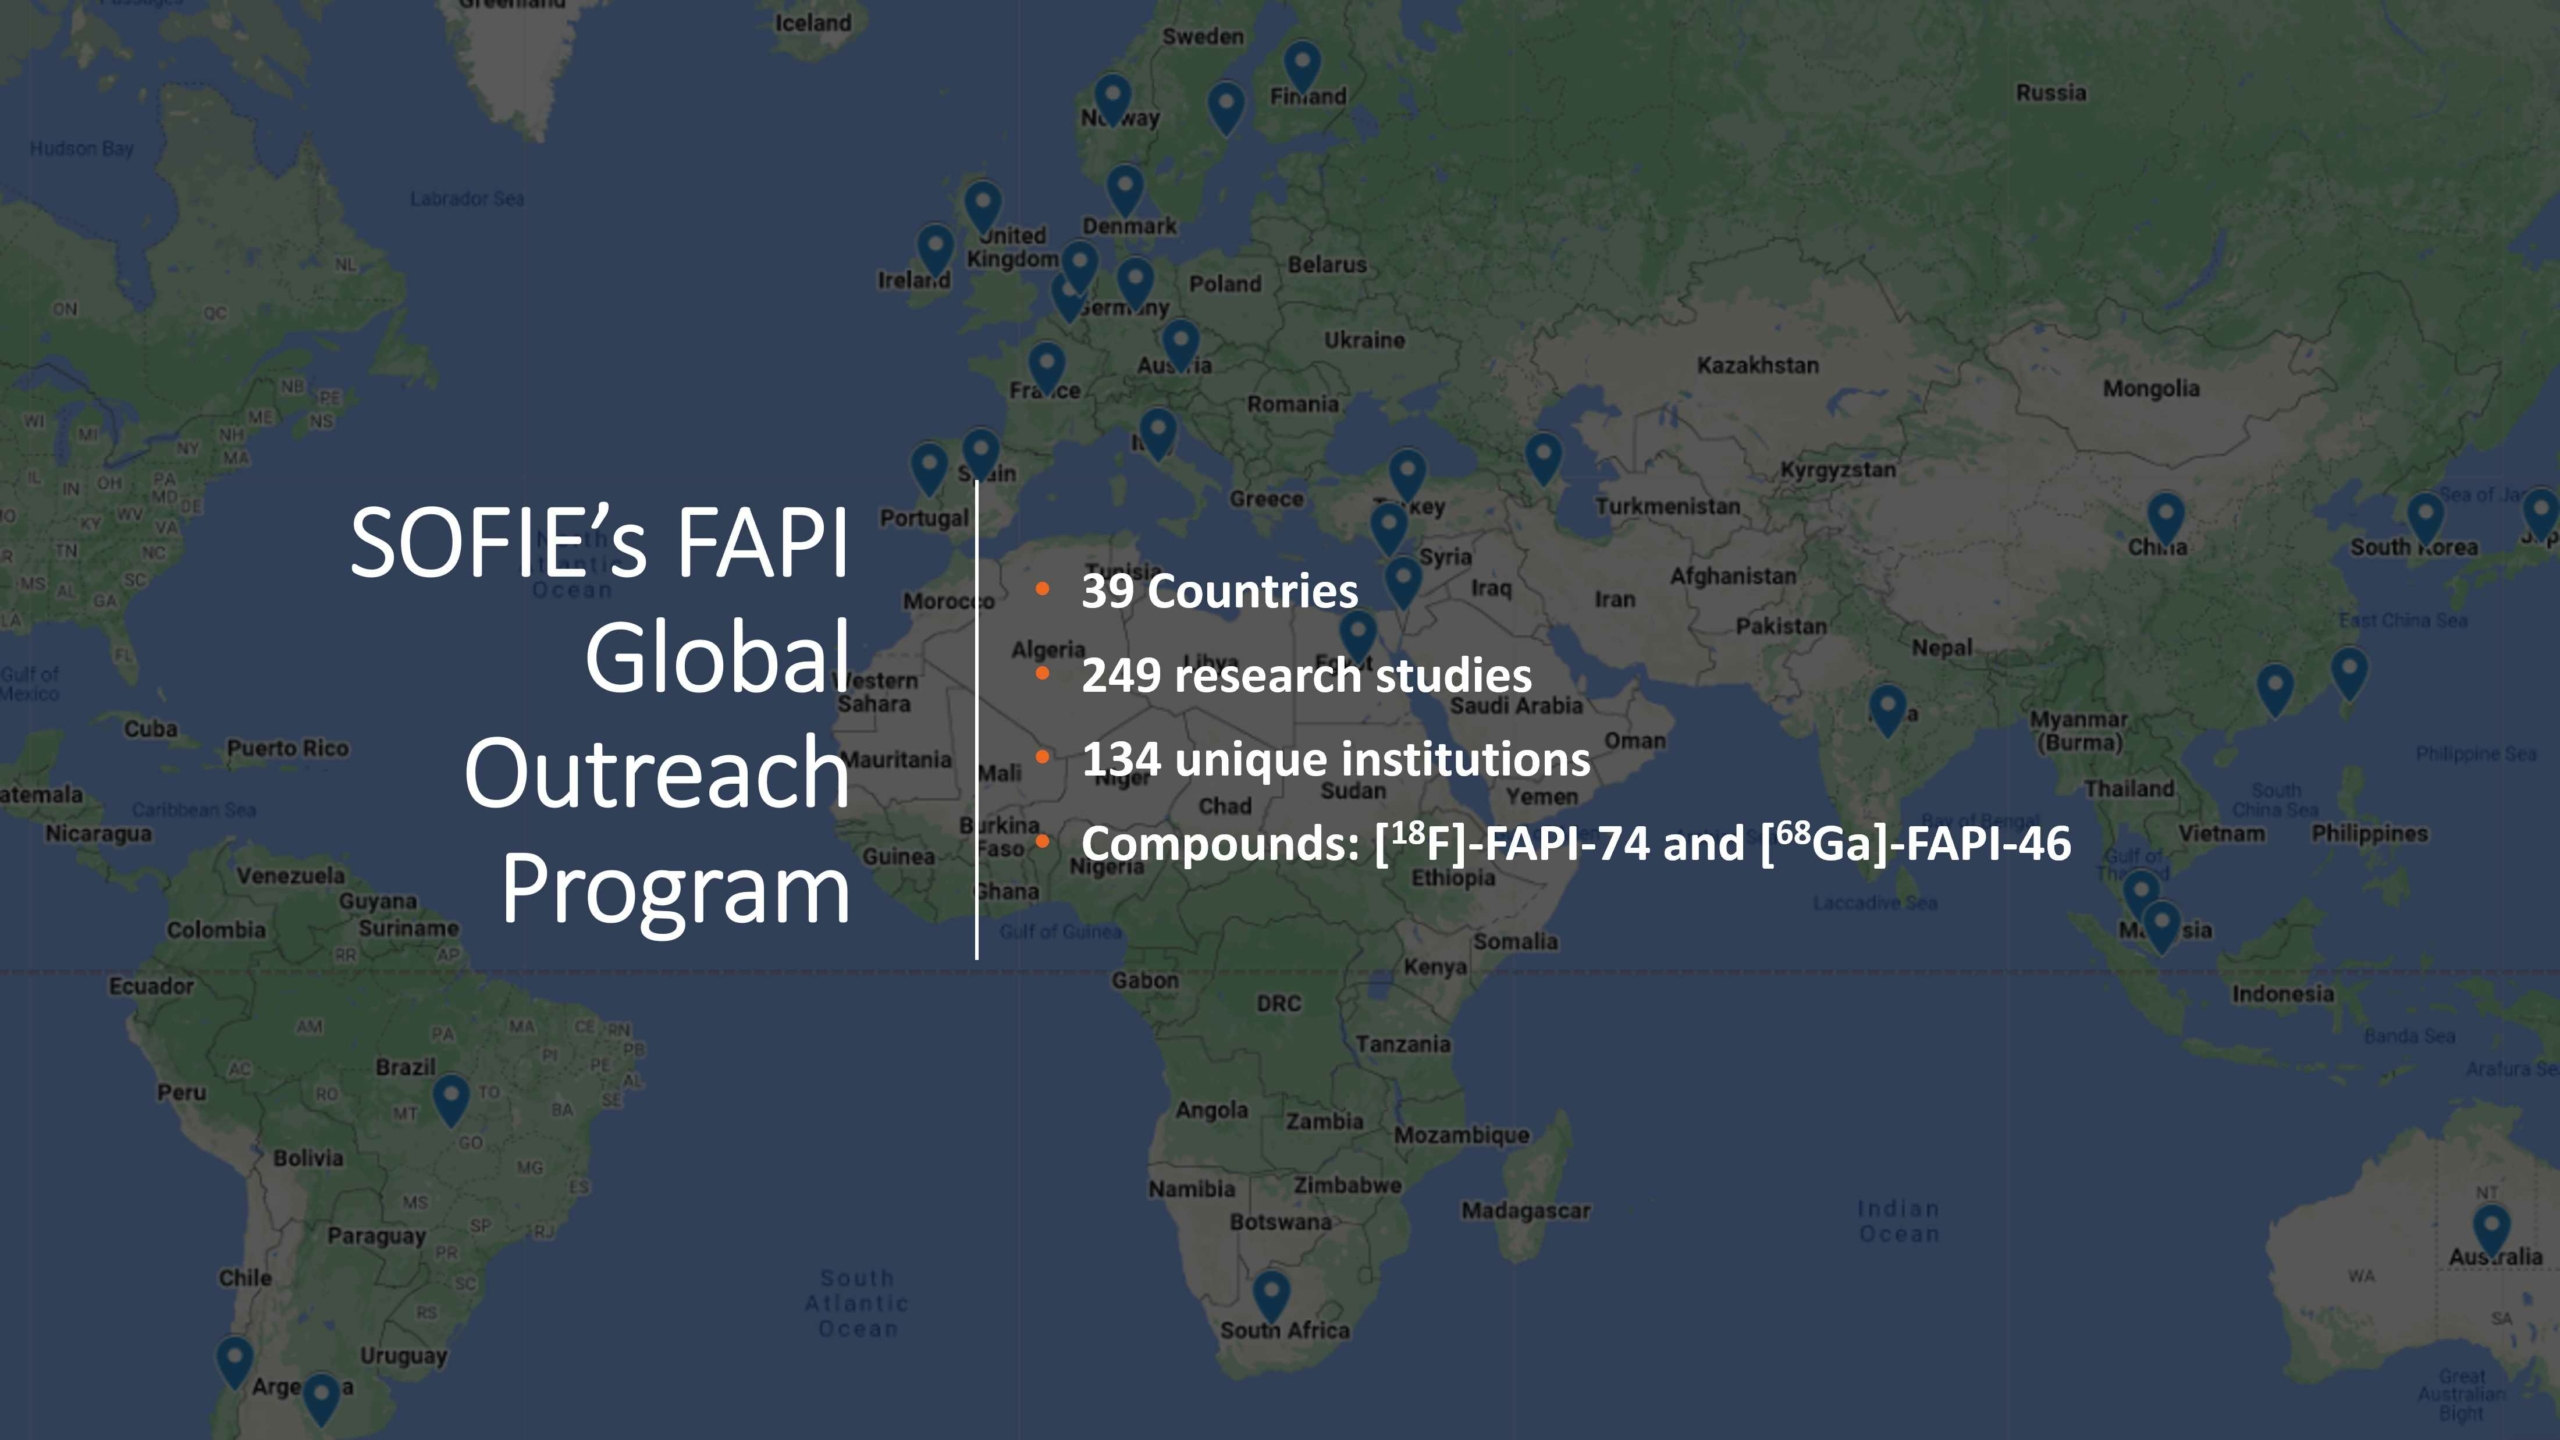 FAPI Global Outreach Program